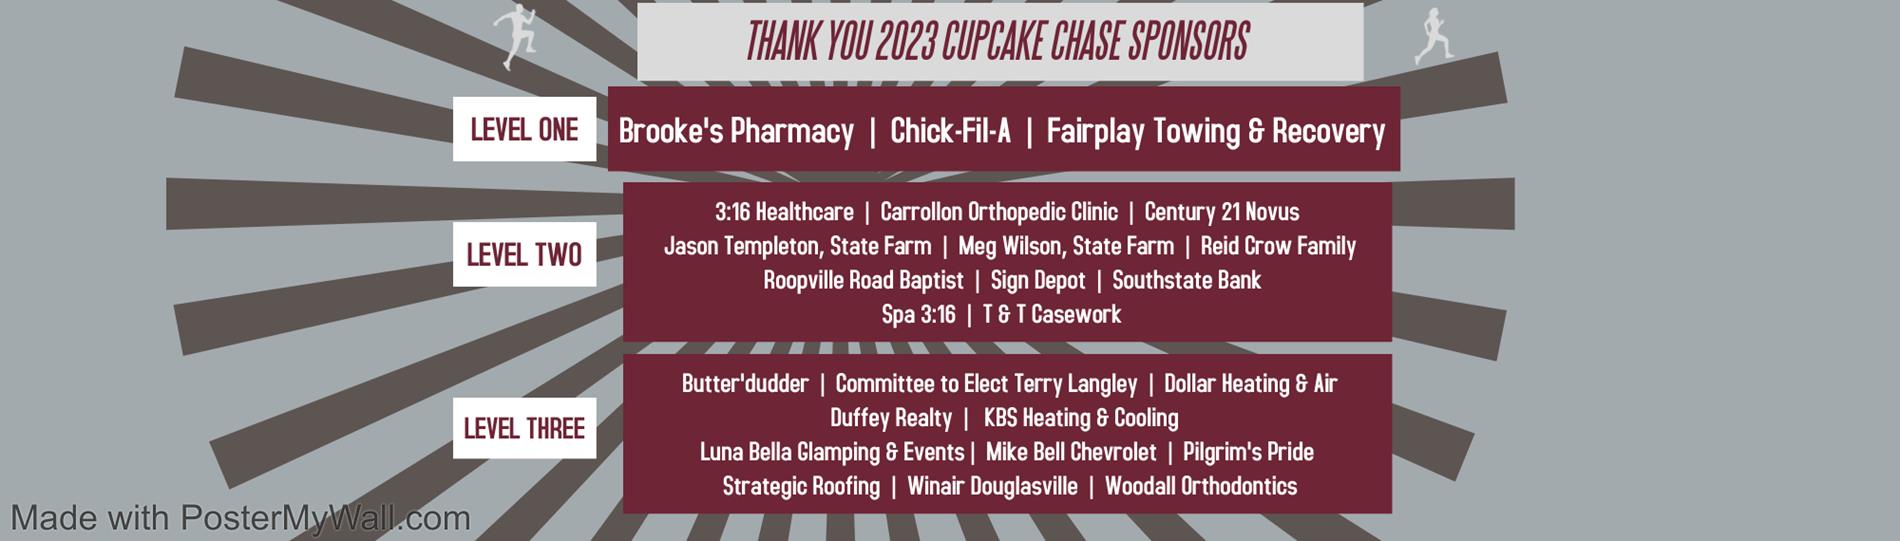 cupcake sponsors